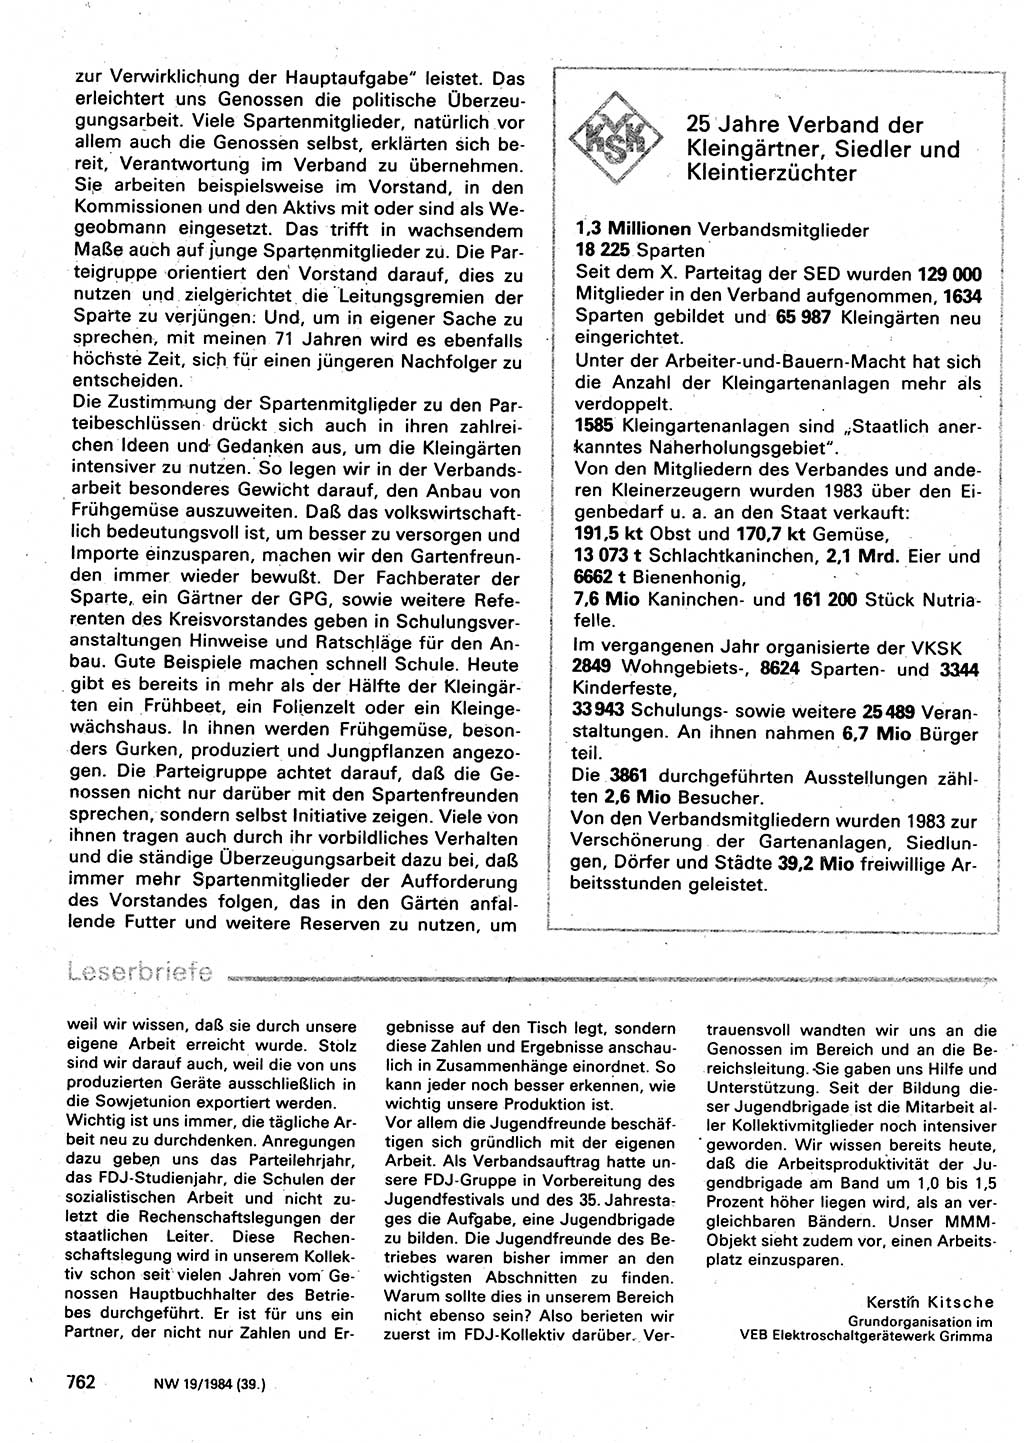 Neuer Weg (NW), Organ des Zentralkomitees (ZK) der SED (Sozialistische Einheitspartei Deutschlands) für Fragen des Parteilebens, 39. Jahrgang [Deutsche Demokratische Republik (DDR)] 1984, Seite 762 (NW ZK SED DDR 1984, S. 762)